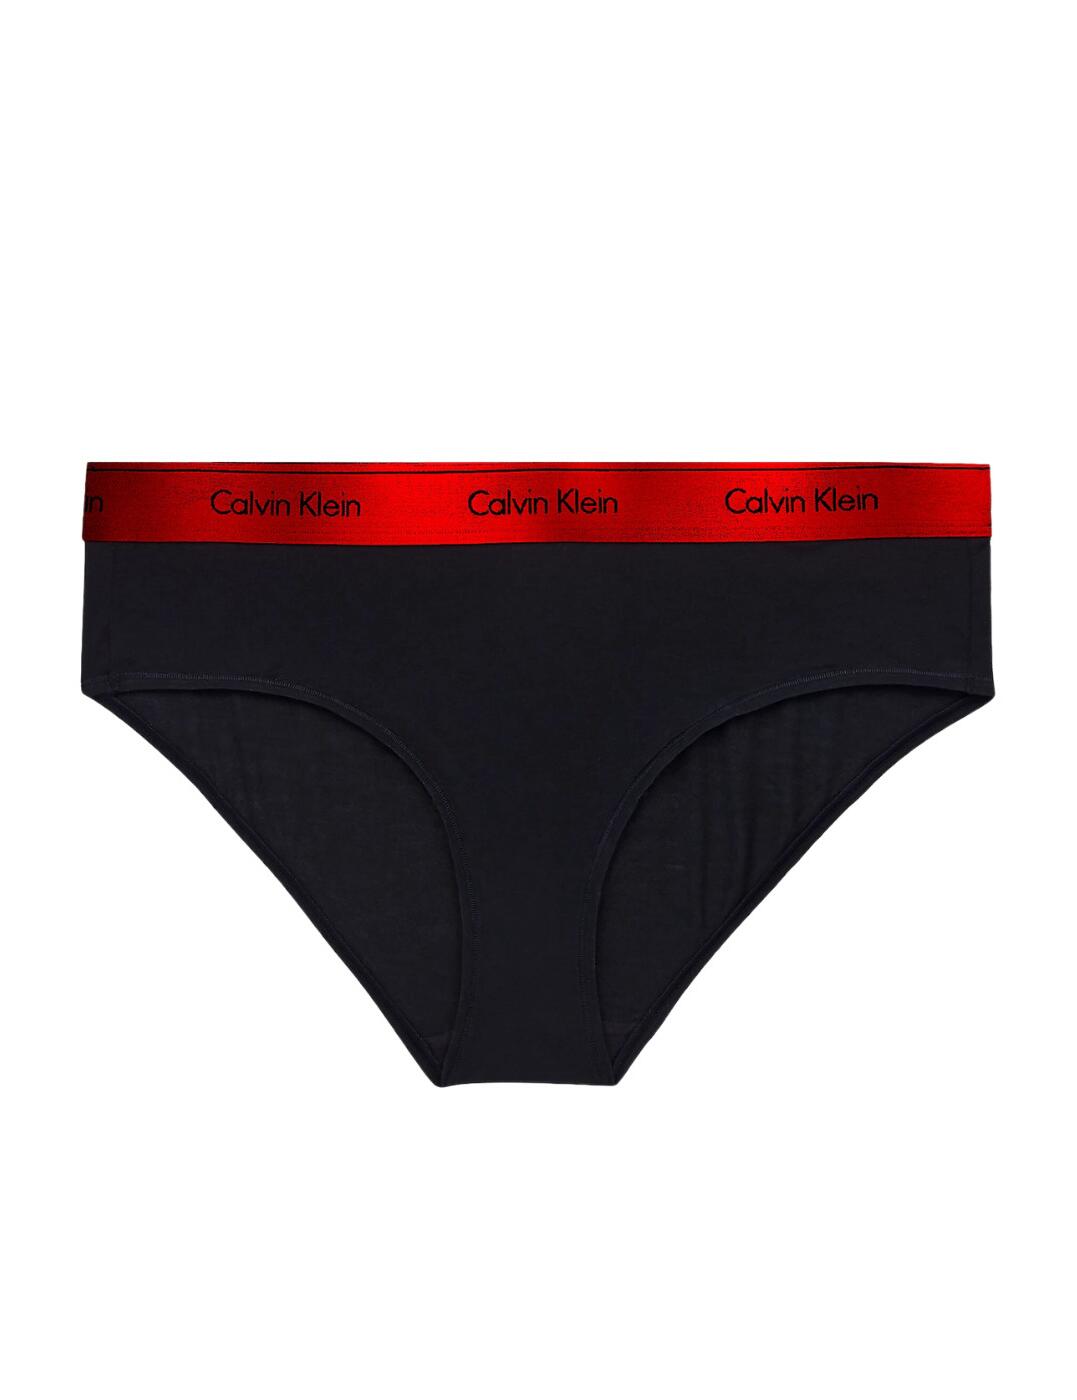 Cavin Klein Modern Cotton Brief Black/Red Gala